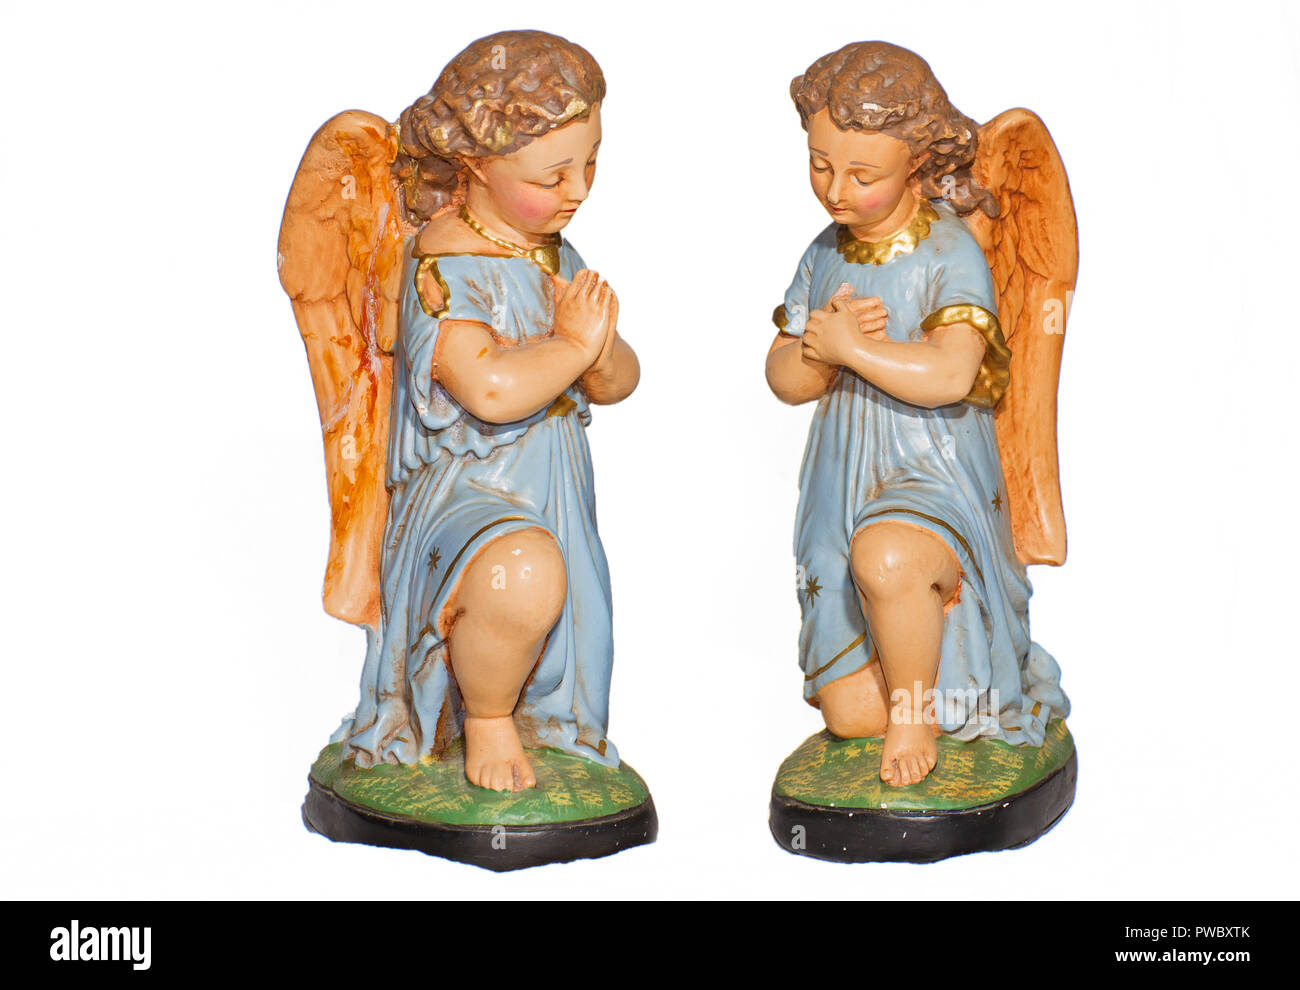 Deux anges en prière avec robe bleue, gypse, des statues en plâtre et peint à la main, isolé sur fond blanc Banque D'Images